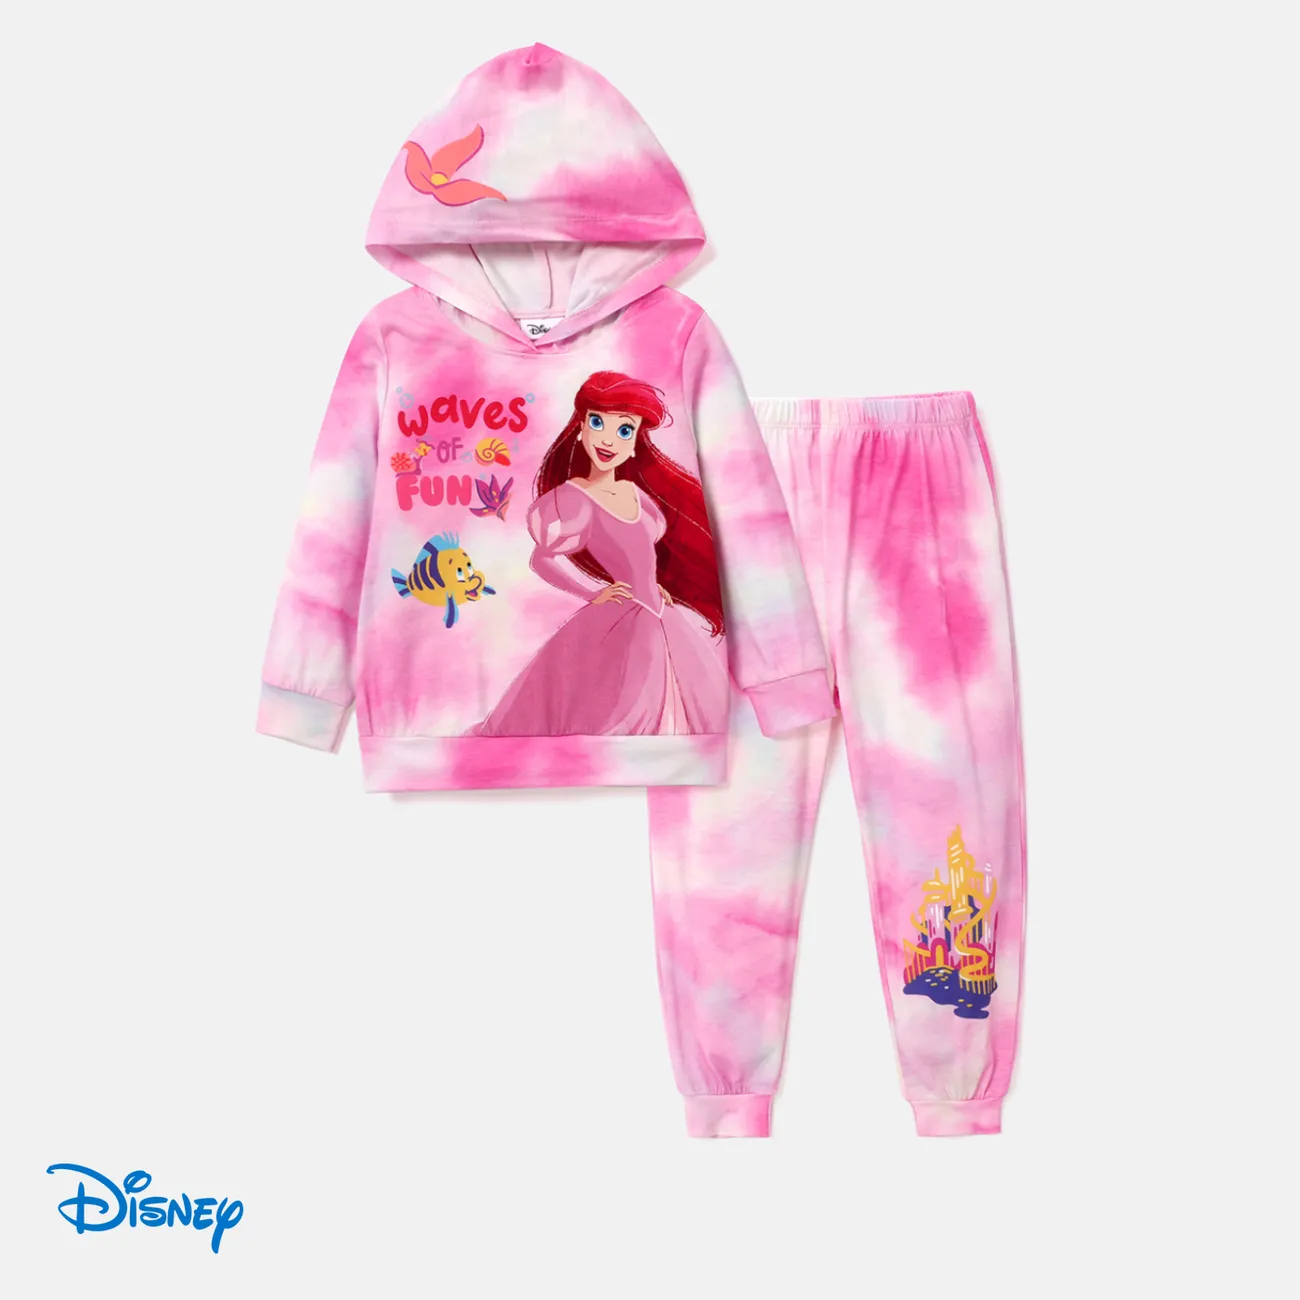 Disney Princess Toddler/Kids Girl 2pcs Character Print Long-sleeve Top and Pants Set Pink big image 1